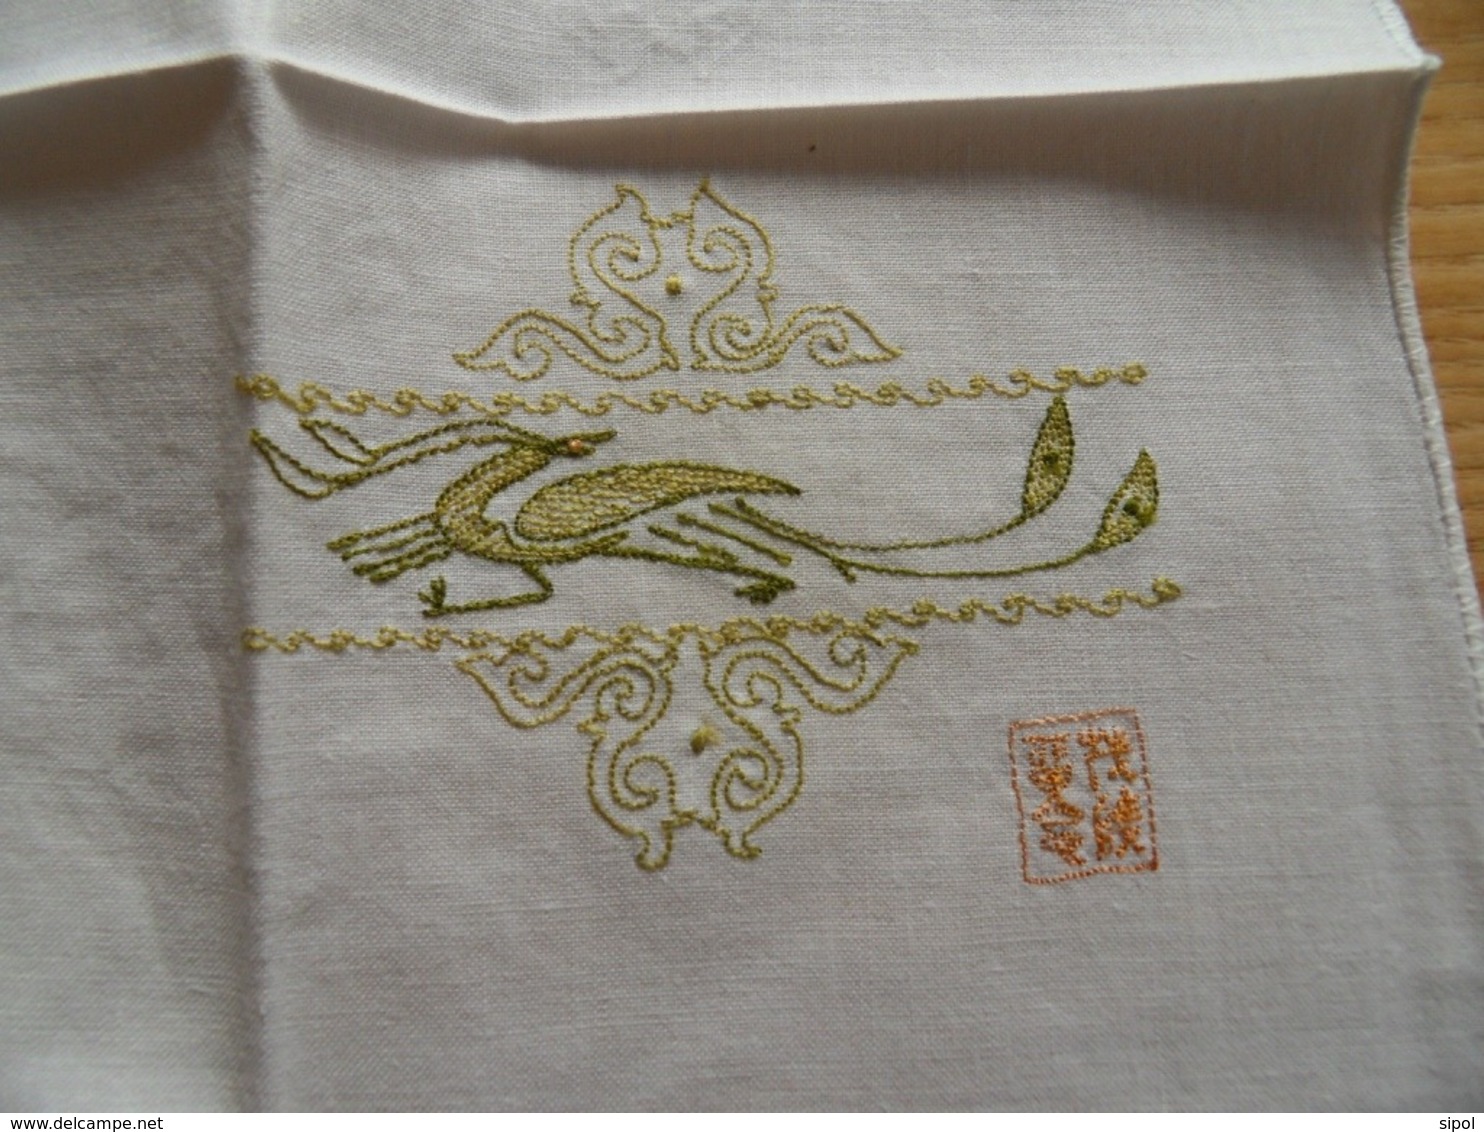 Série de 6 serviettes ( ou mouchoirs ) brodés  et ourlés machine coton blanc